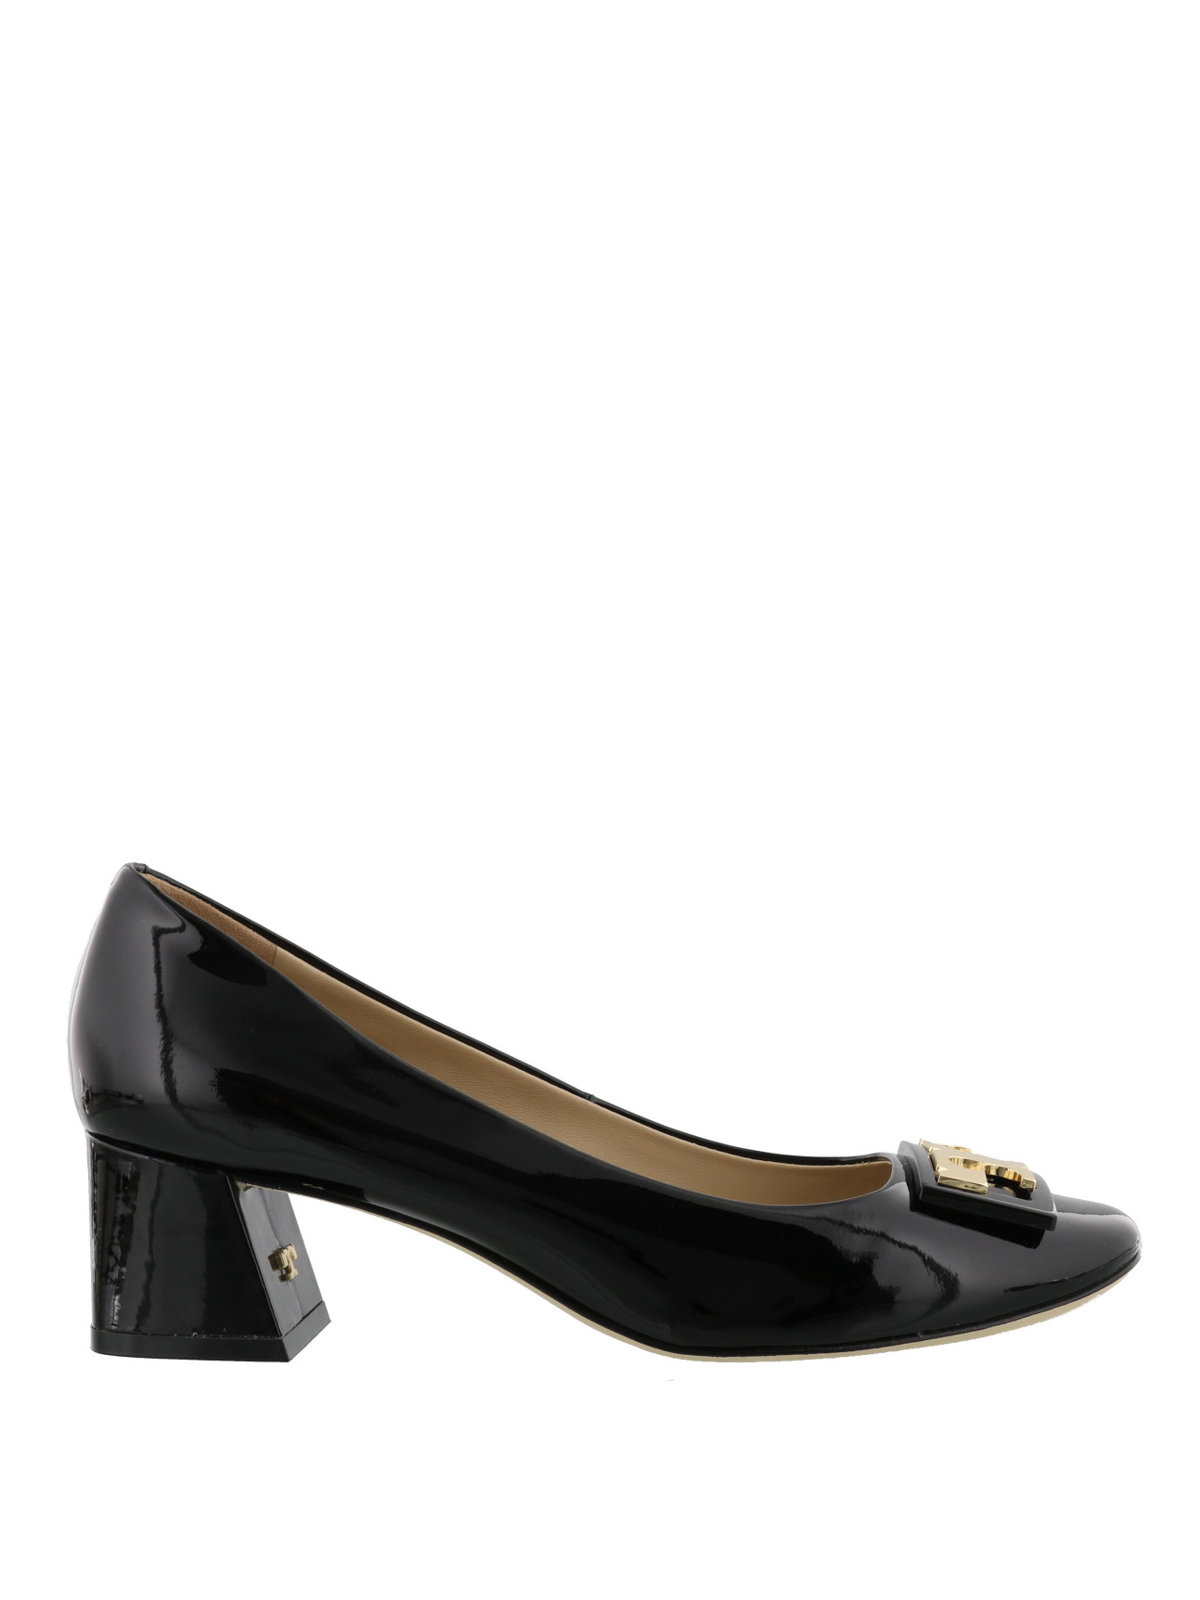 Court shoes Tory Burch - Gigi black patent leather pumps - 32944001